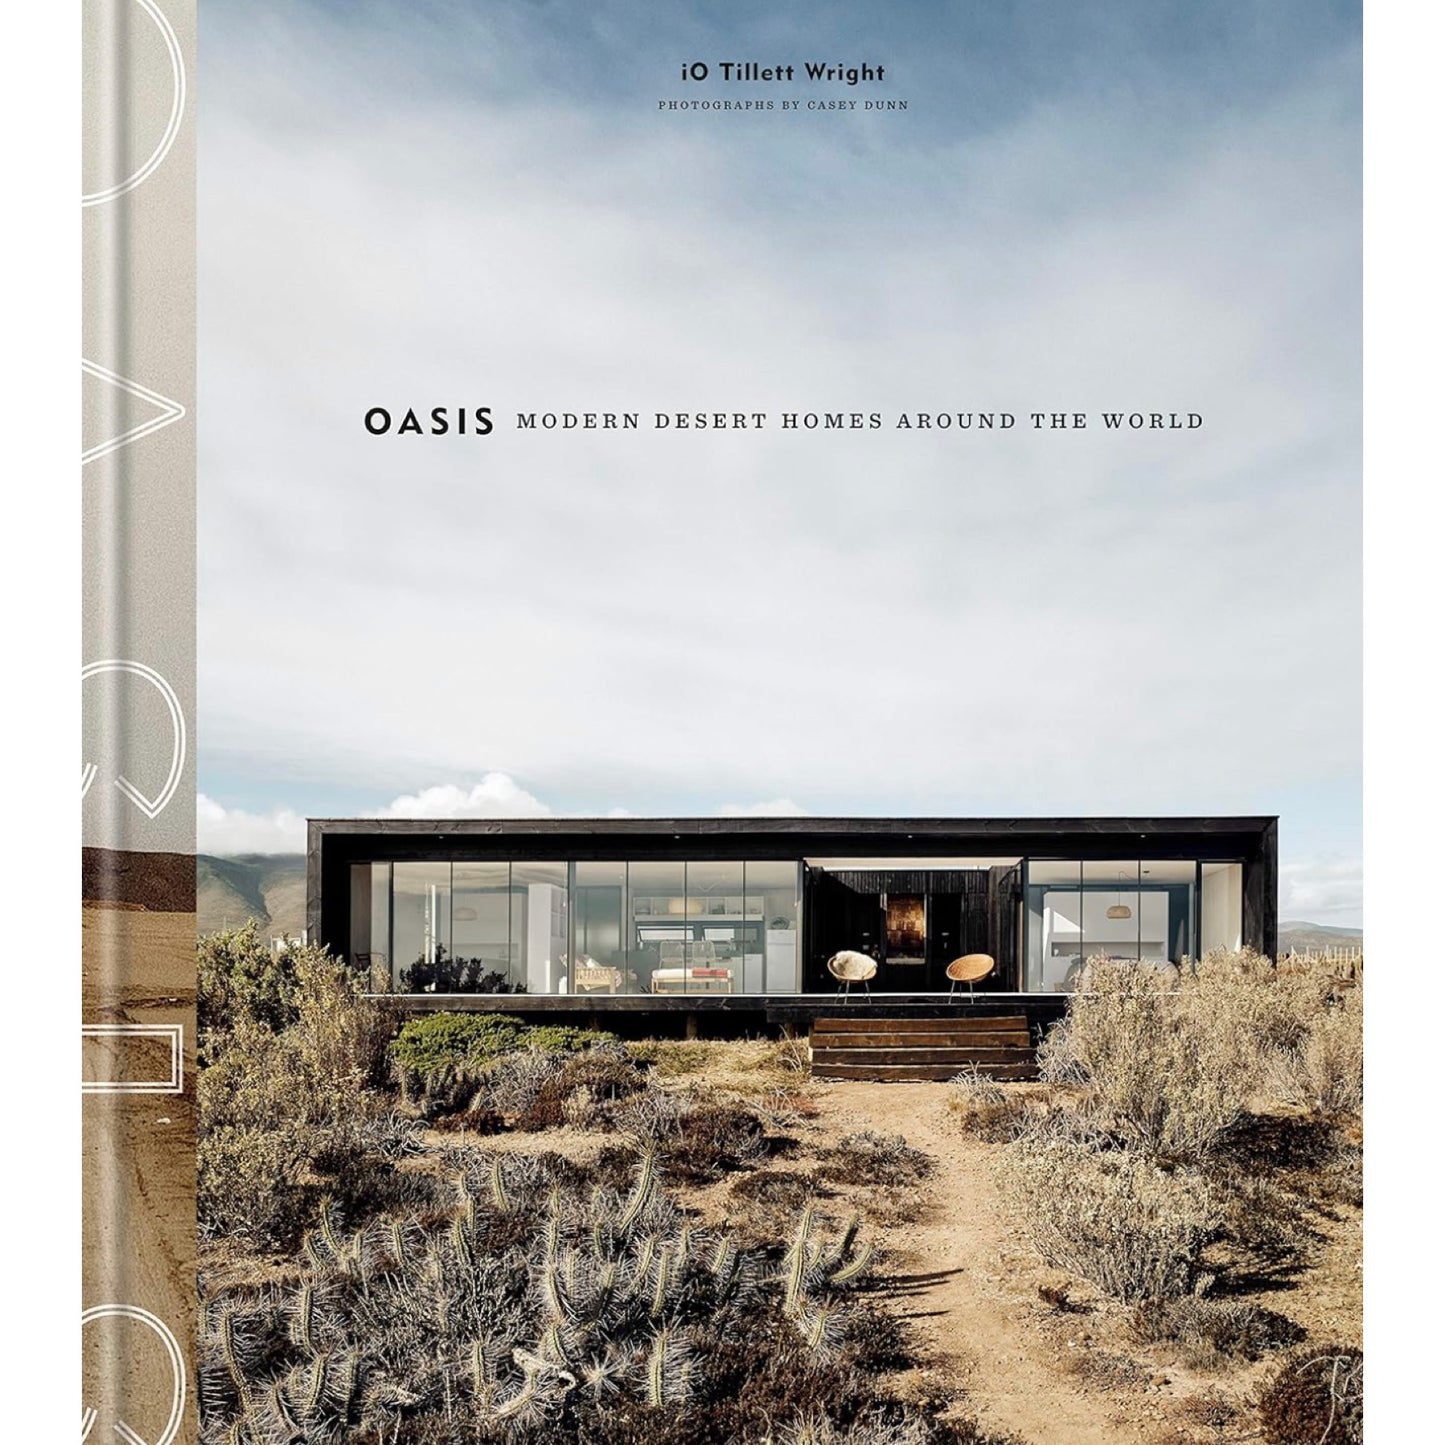 Oasis: Modern Desert Homes